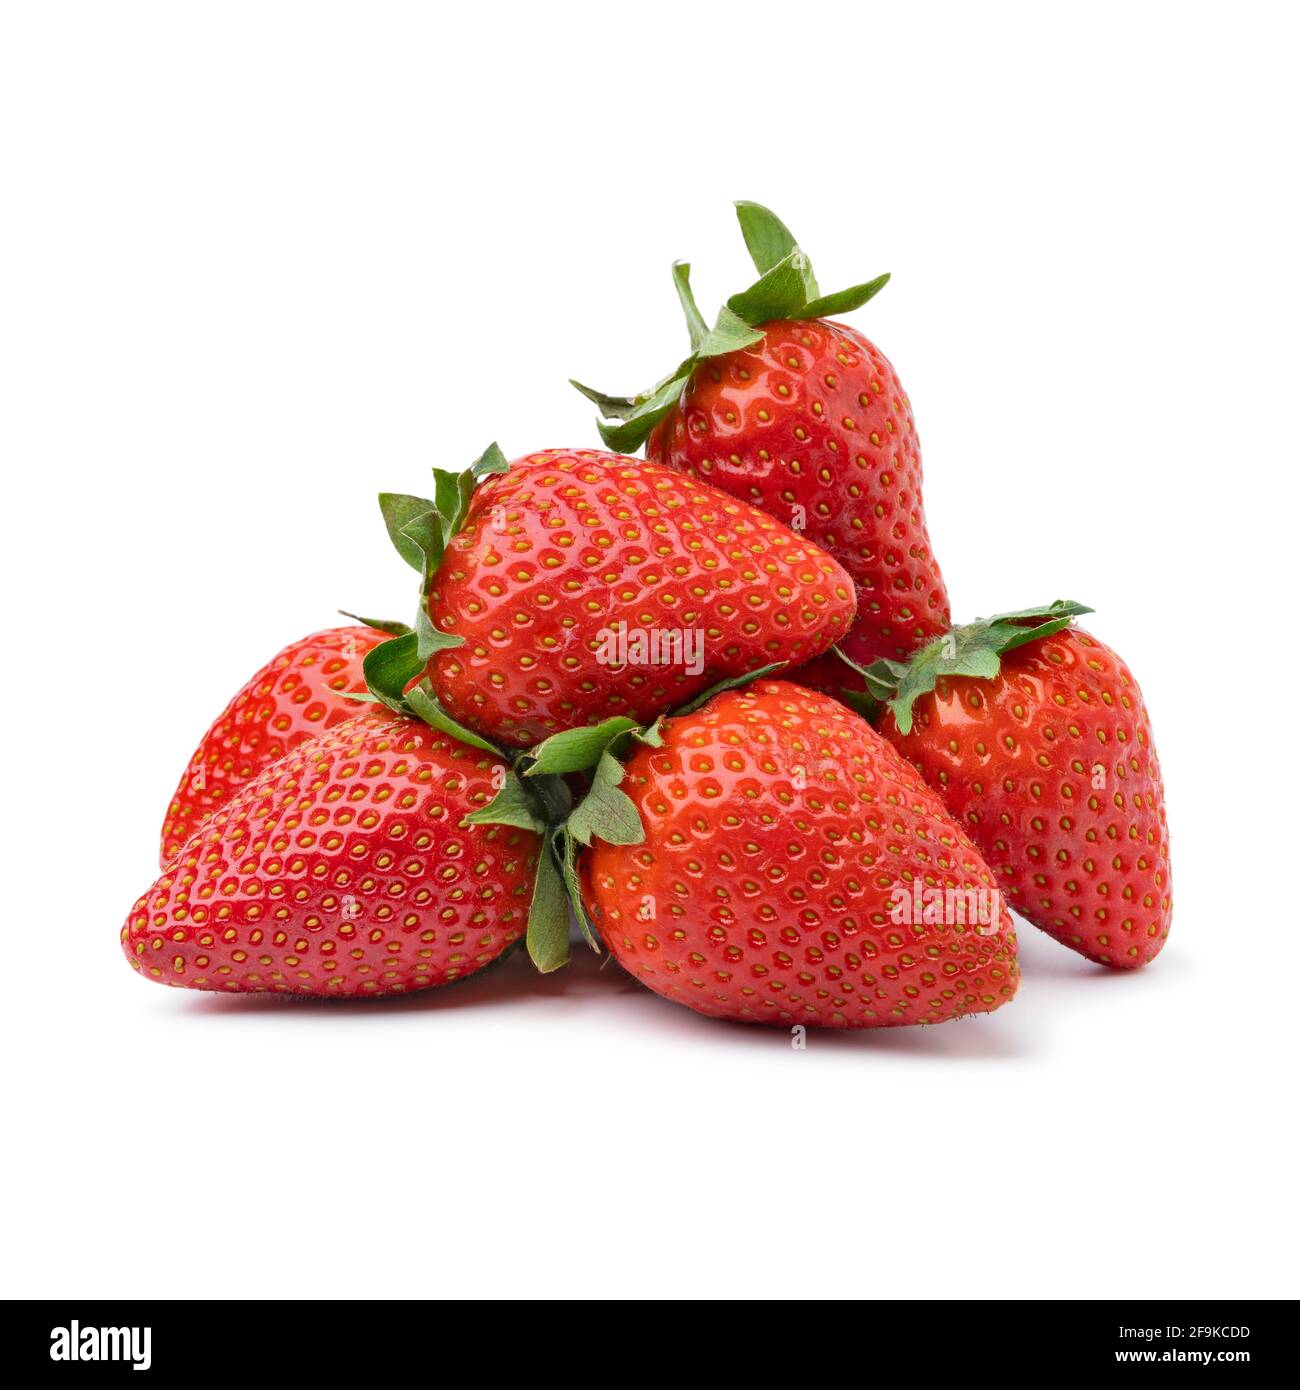 Tas de fraises mûres rouges fraîchement cueillies isolées sur du blanc arrière-plan Banque D'Images